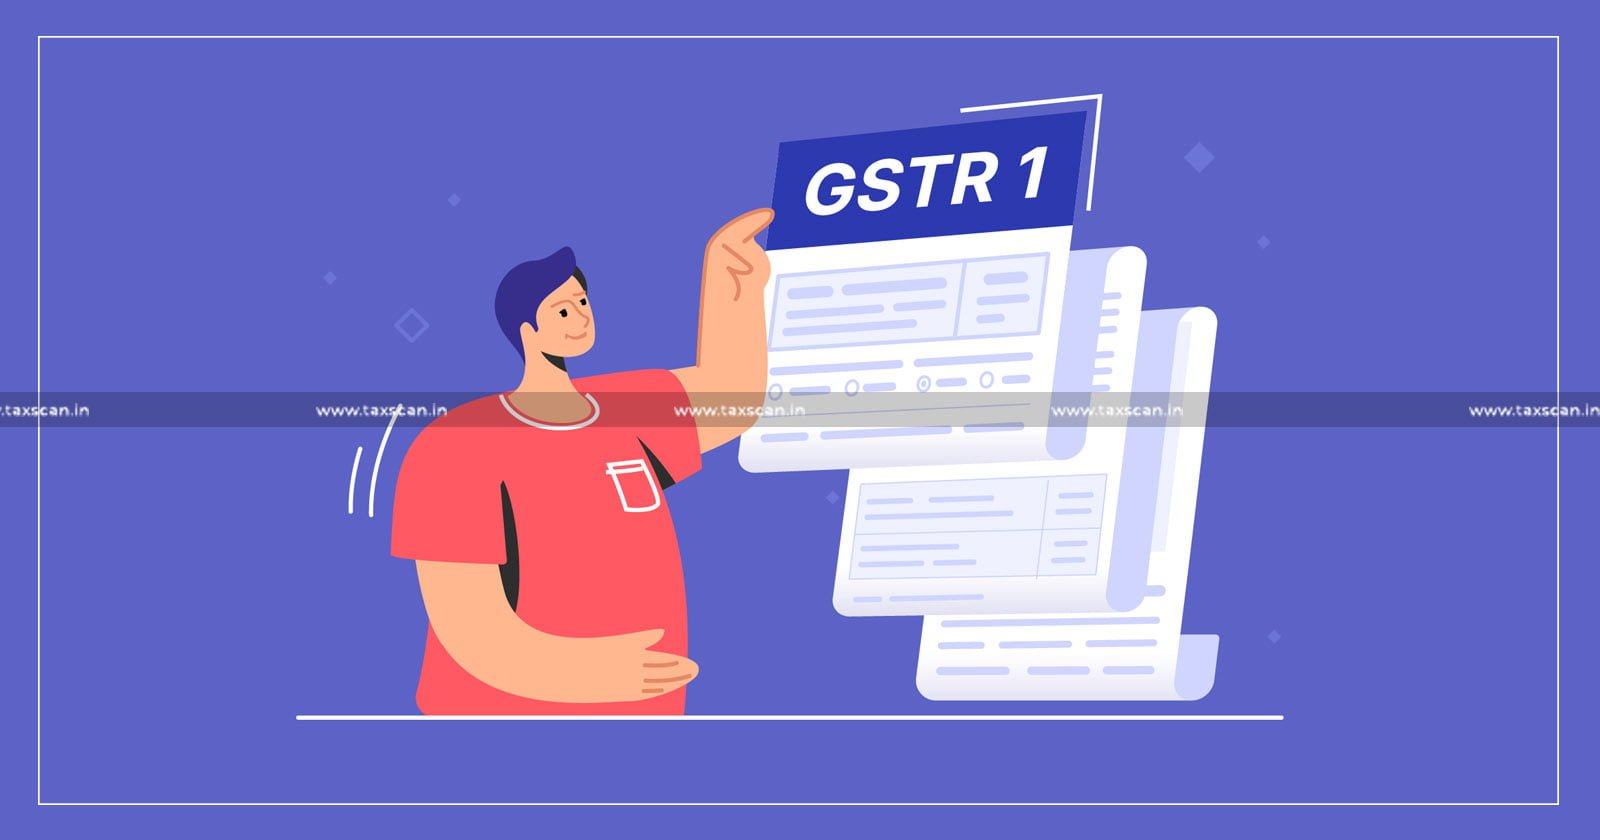 GST - Kerala High Court - GSTR - GSTR 1 - CBDT - taxscan